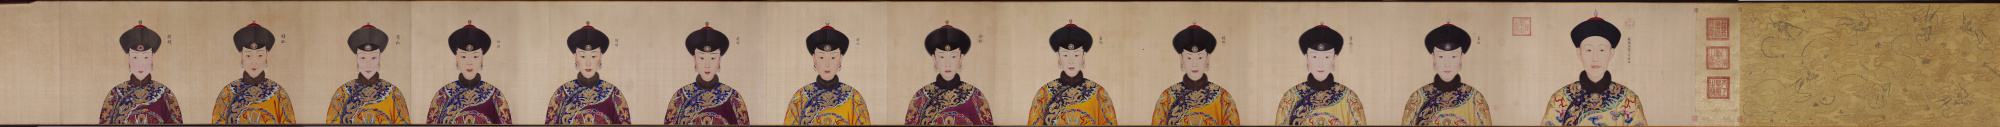 清 郎世宁 乾隆帝、后、妃像卷 克利夫兰美术馆 52.9 x 688.3cm高清大图下载